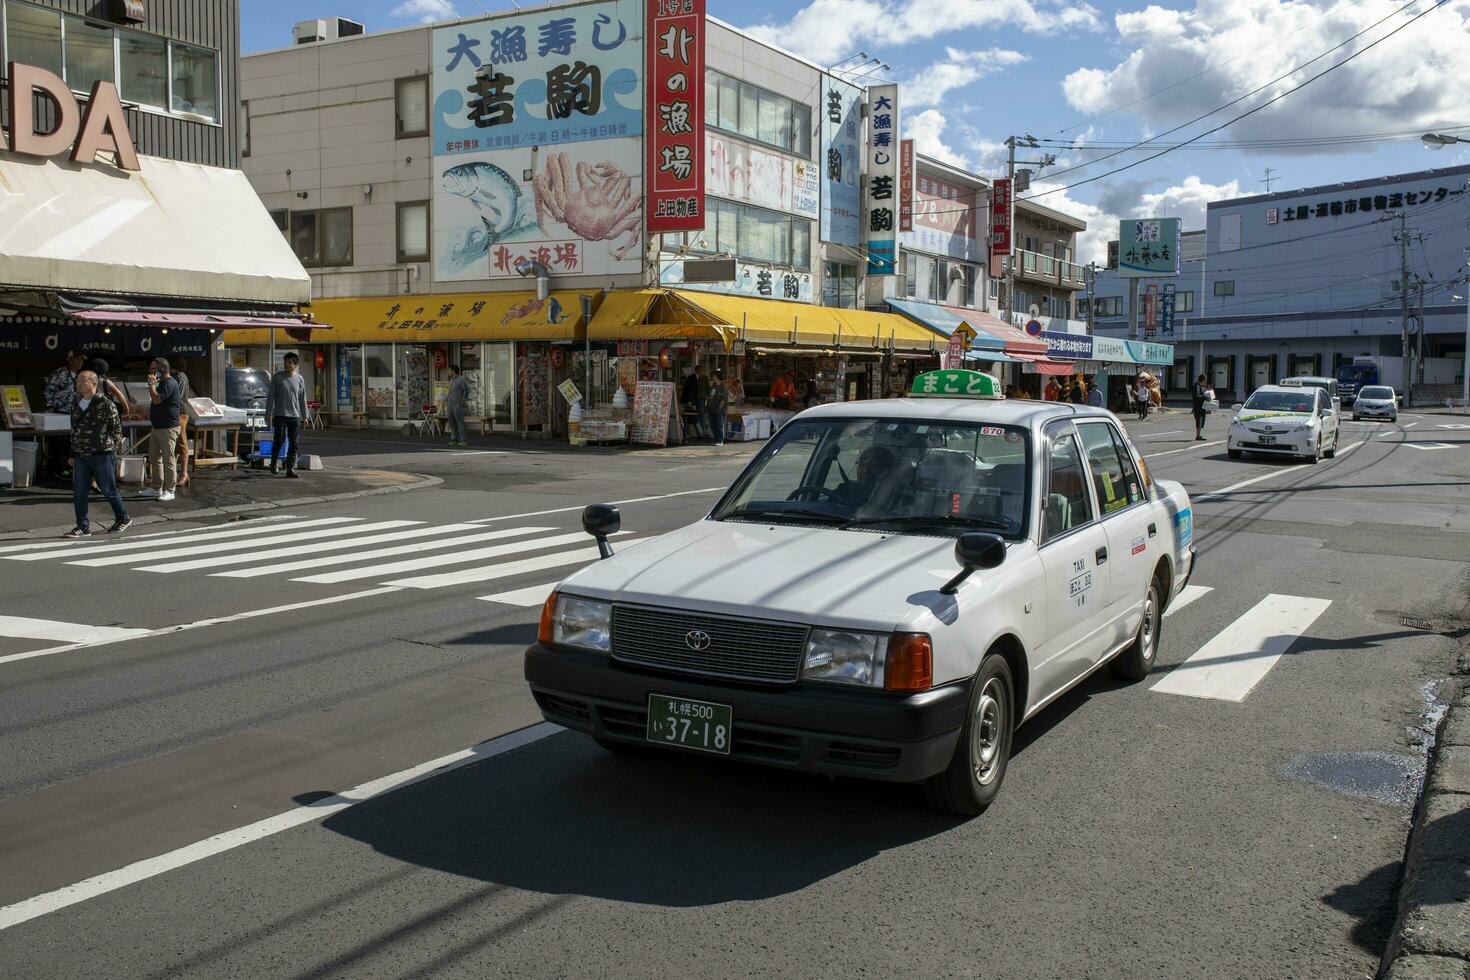 hokkaido japan - 8 oktober 2018 gammal Toyota taxi körning på soen-hassamu dori väg jogai skaldjur marknadsföra hokkaido japan foto